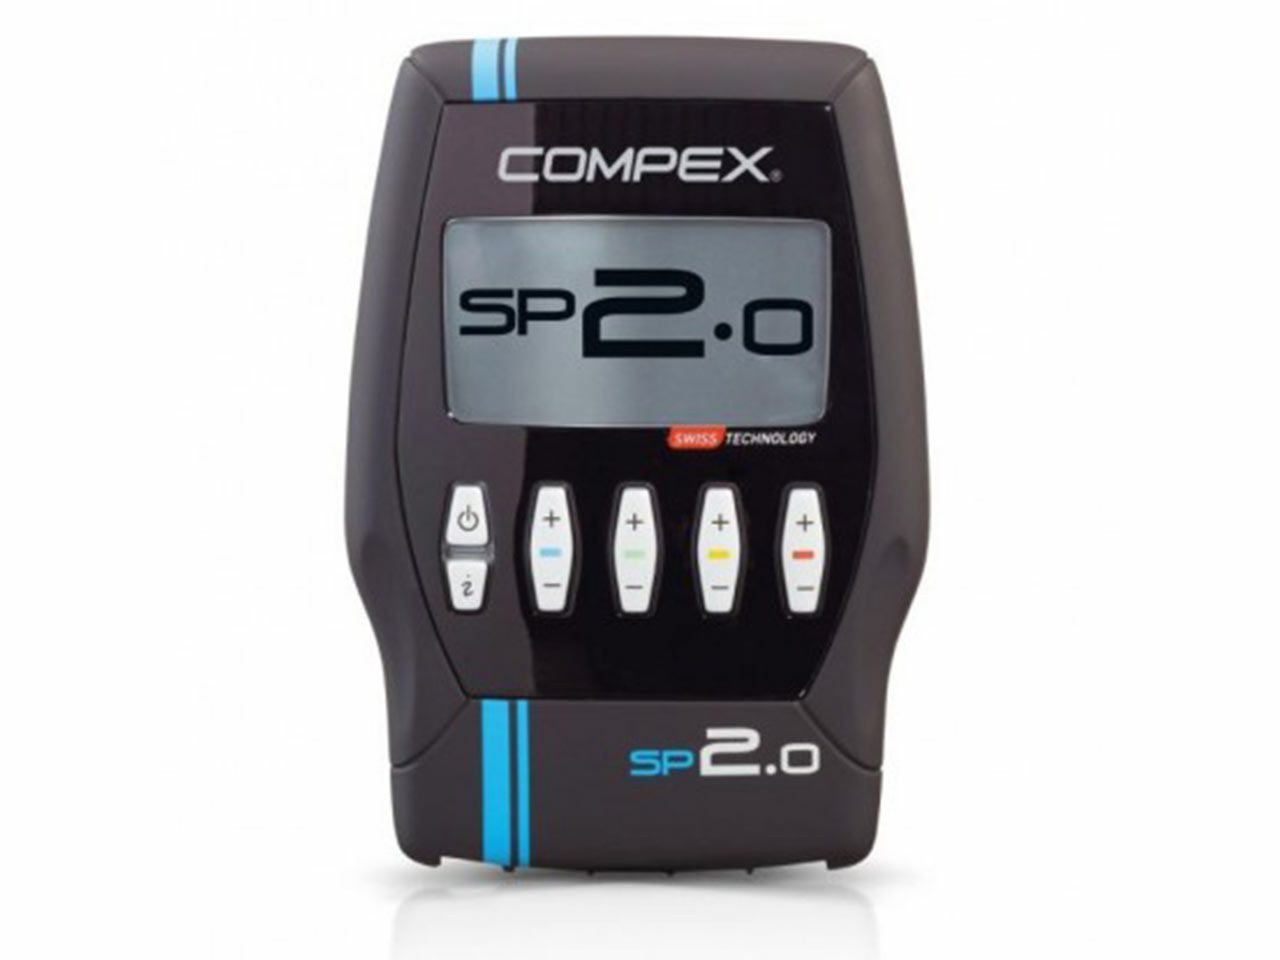 COMPEX SP 2.0